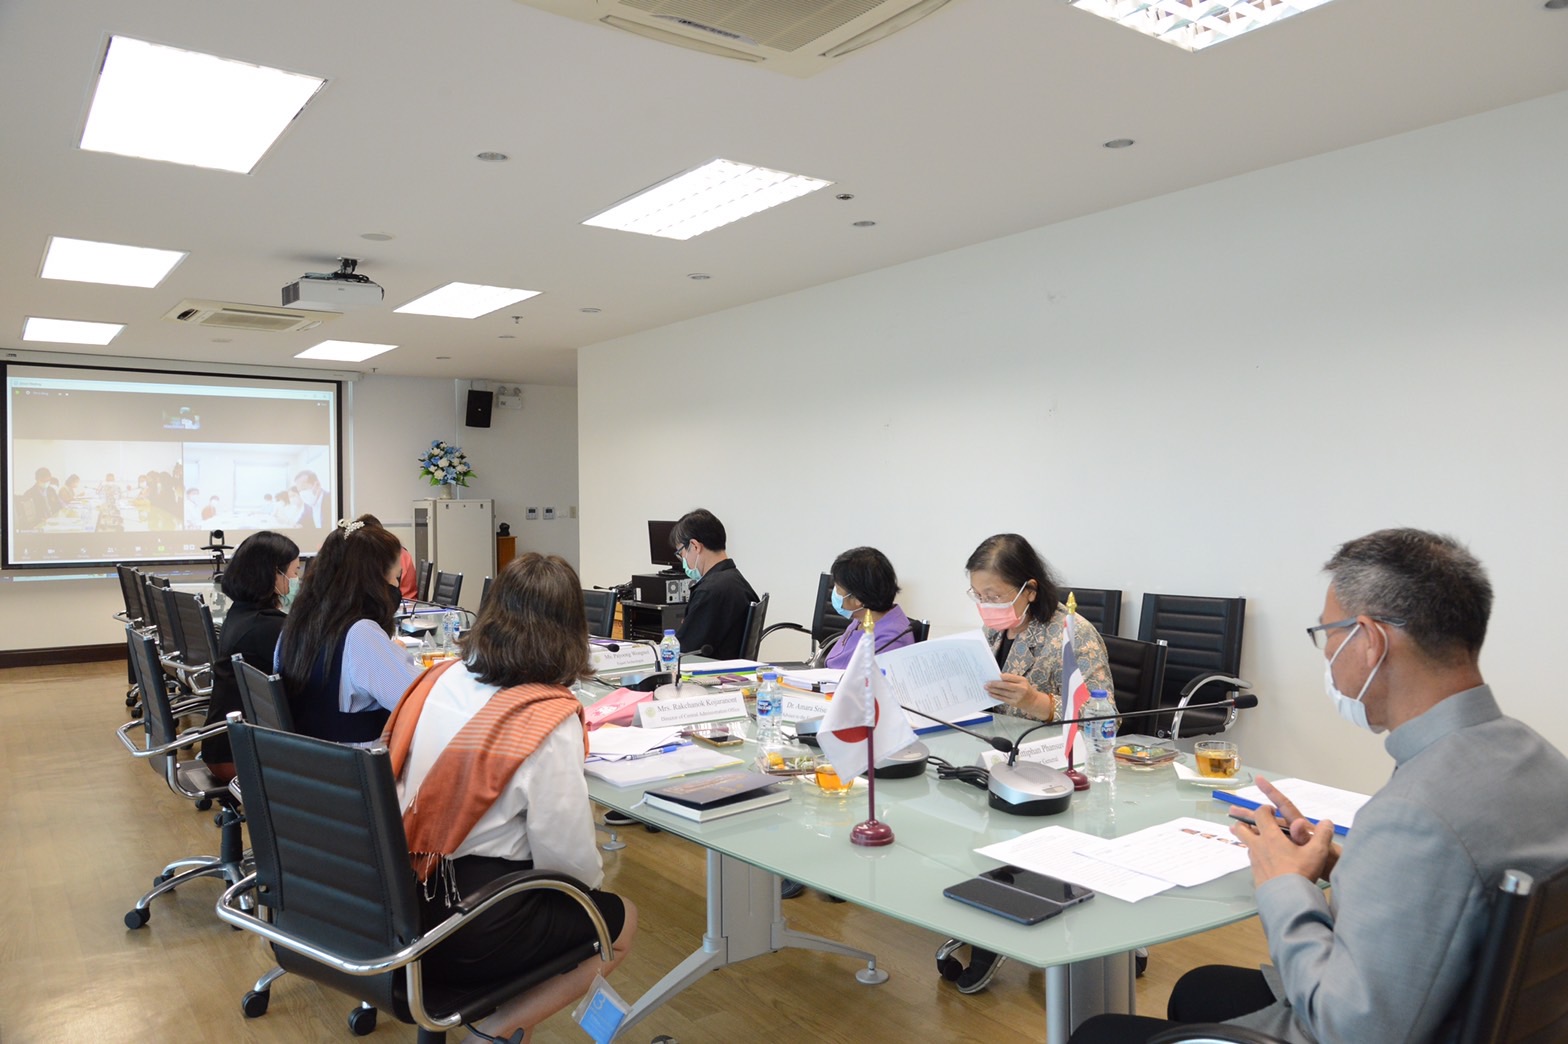 กลุ่มแผนงาน โครงการ และวิเทศสัมพันธ์ เข้าร่วม ประชุมทางไกล (ผ่านระบบออนไลน์) กับจังหวัดซากะ ประเทศญี่ปุ่น